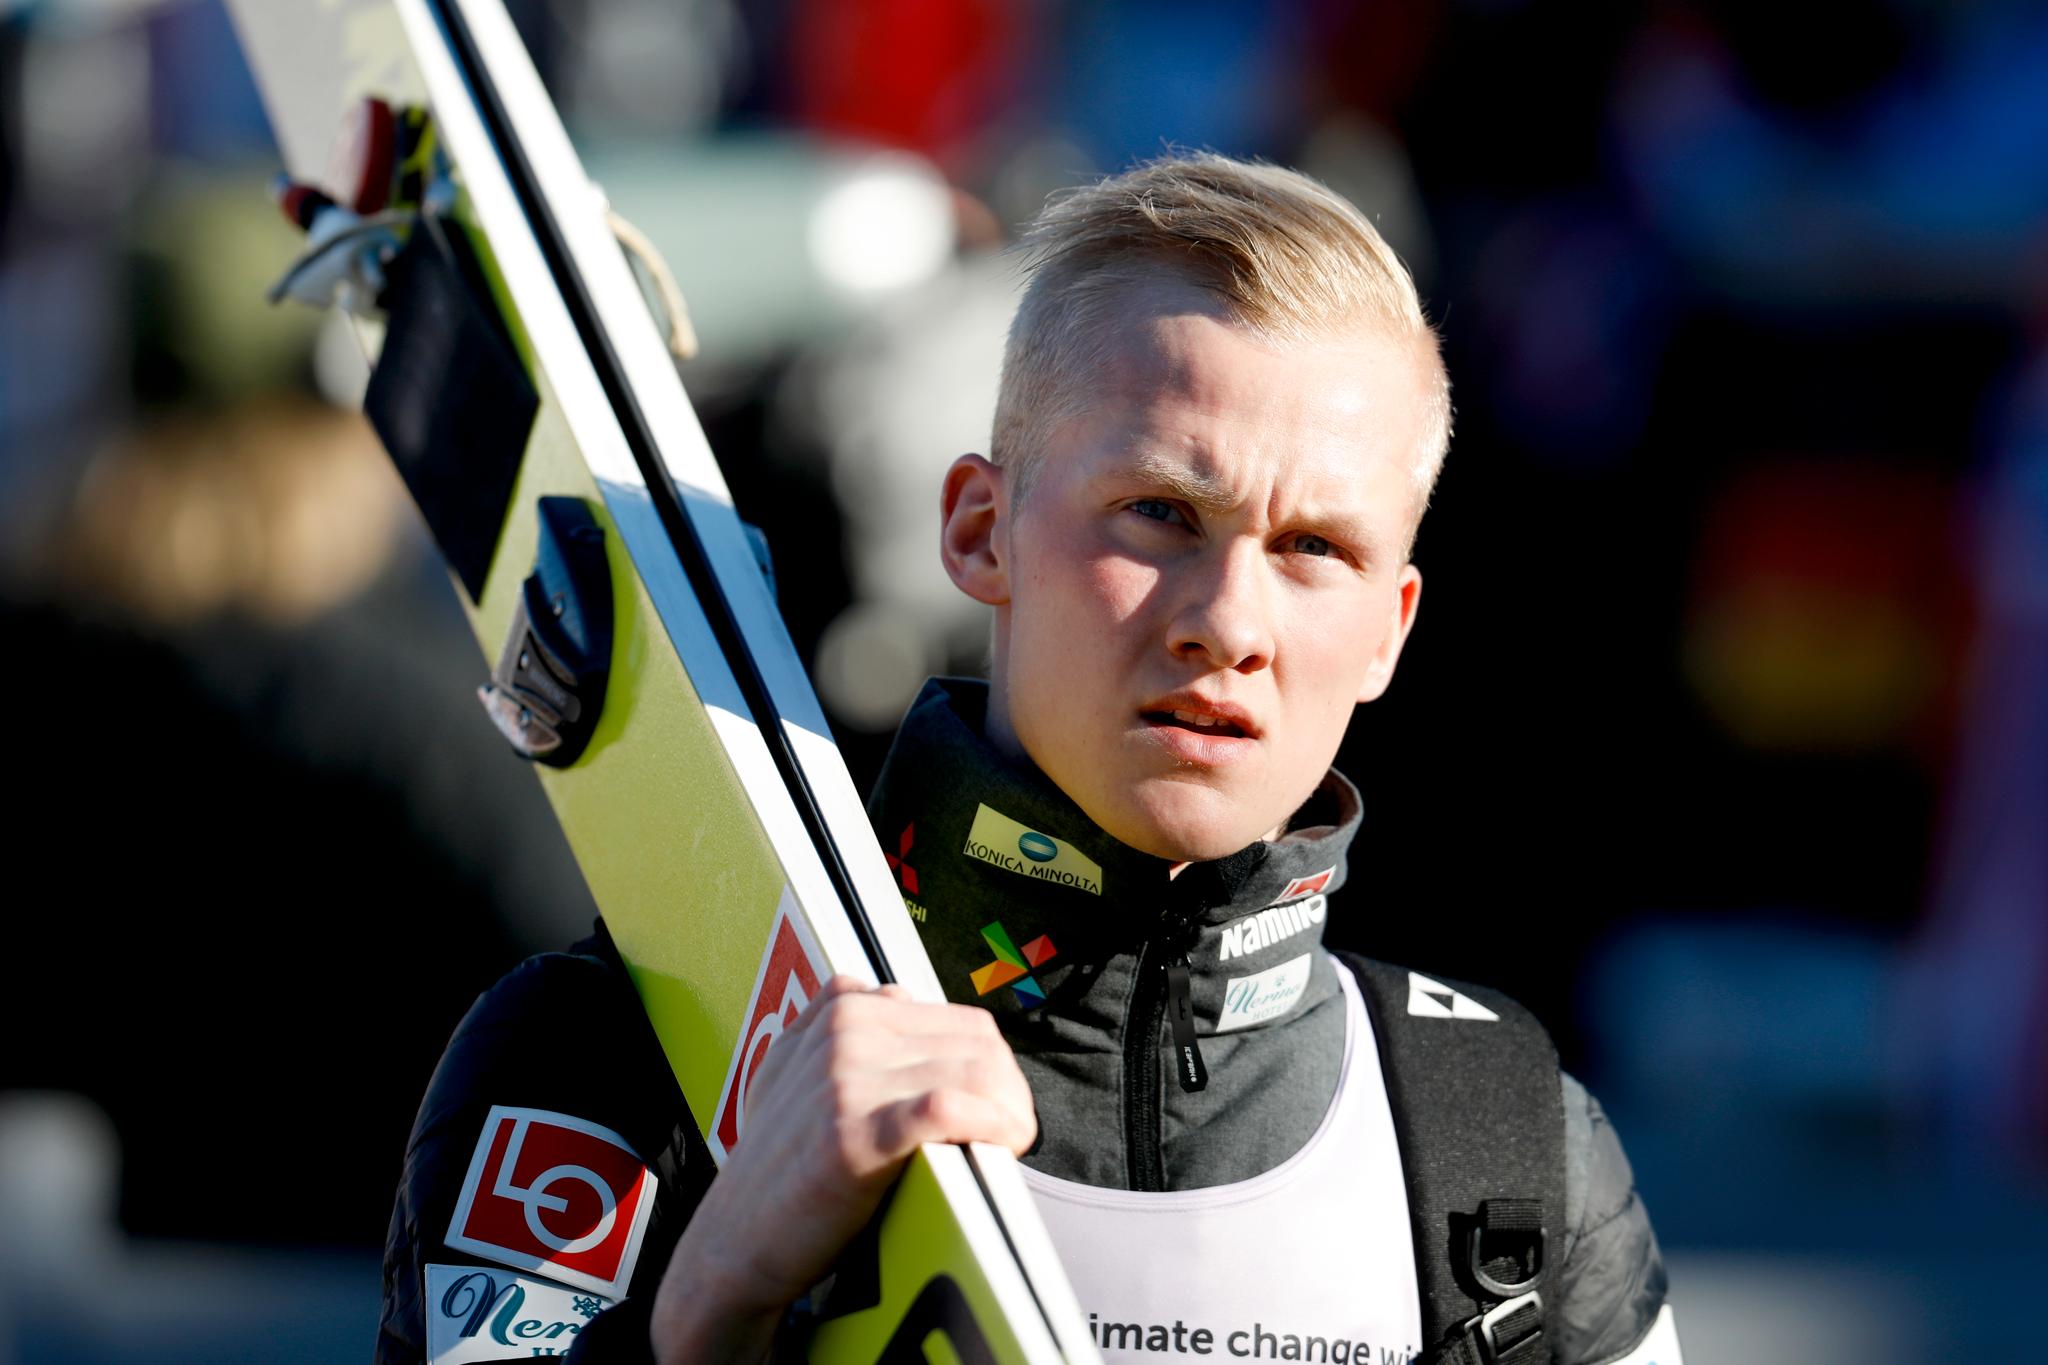 19 år gamle Thomas Aasen Markeng sto for dagens norske opptur i hoppbakken med sin femteplass. 